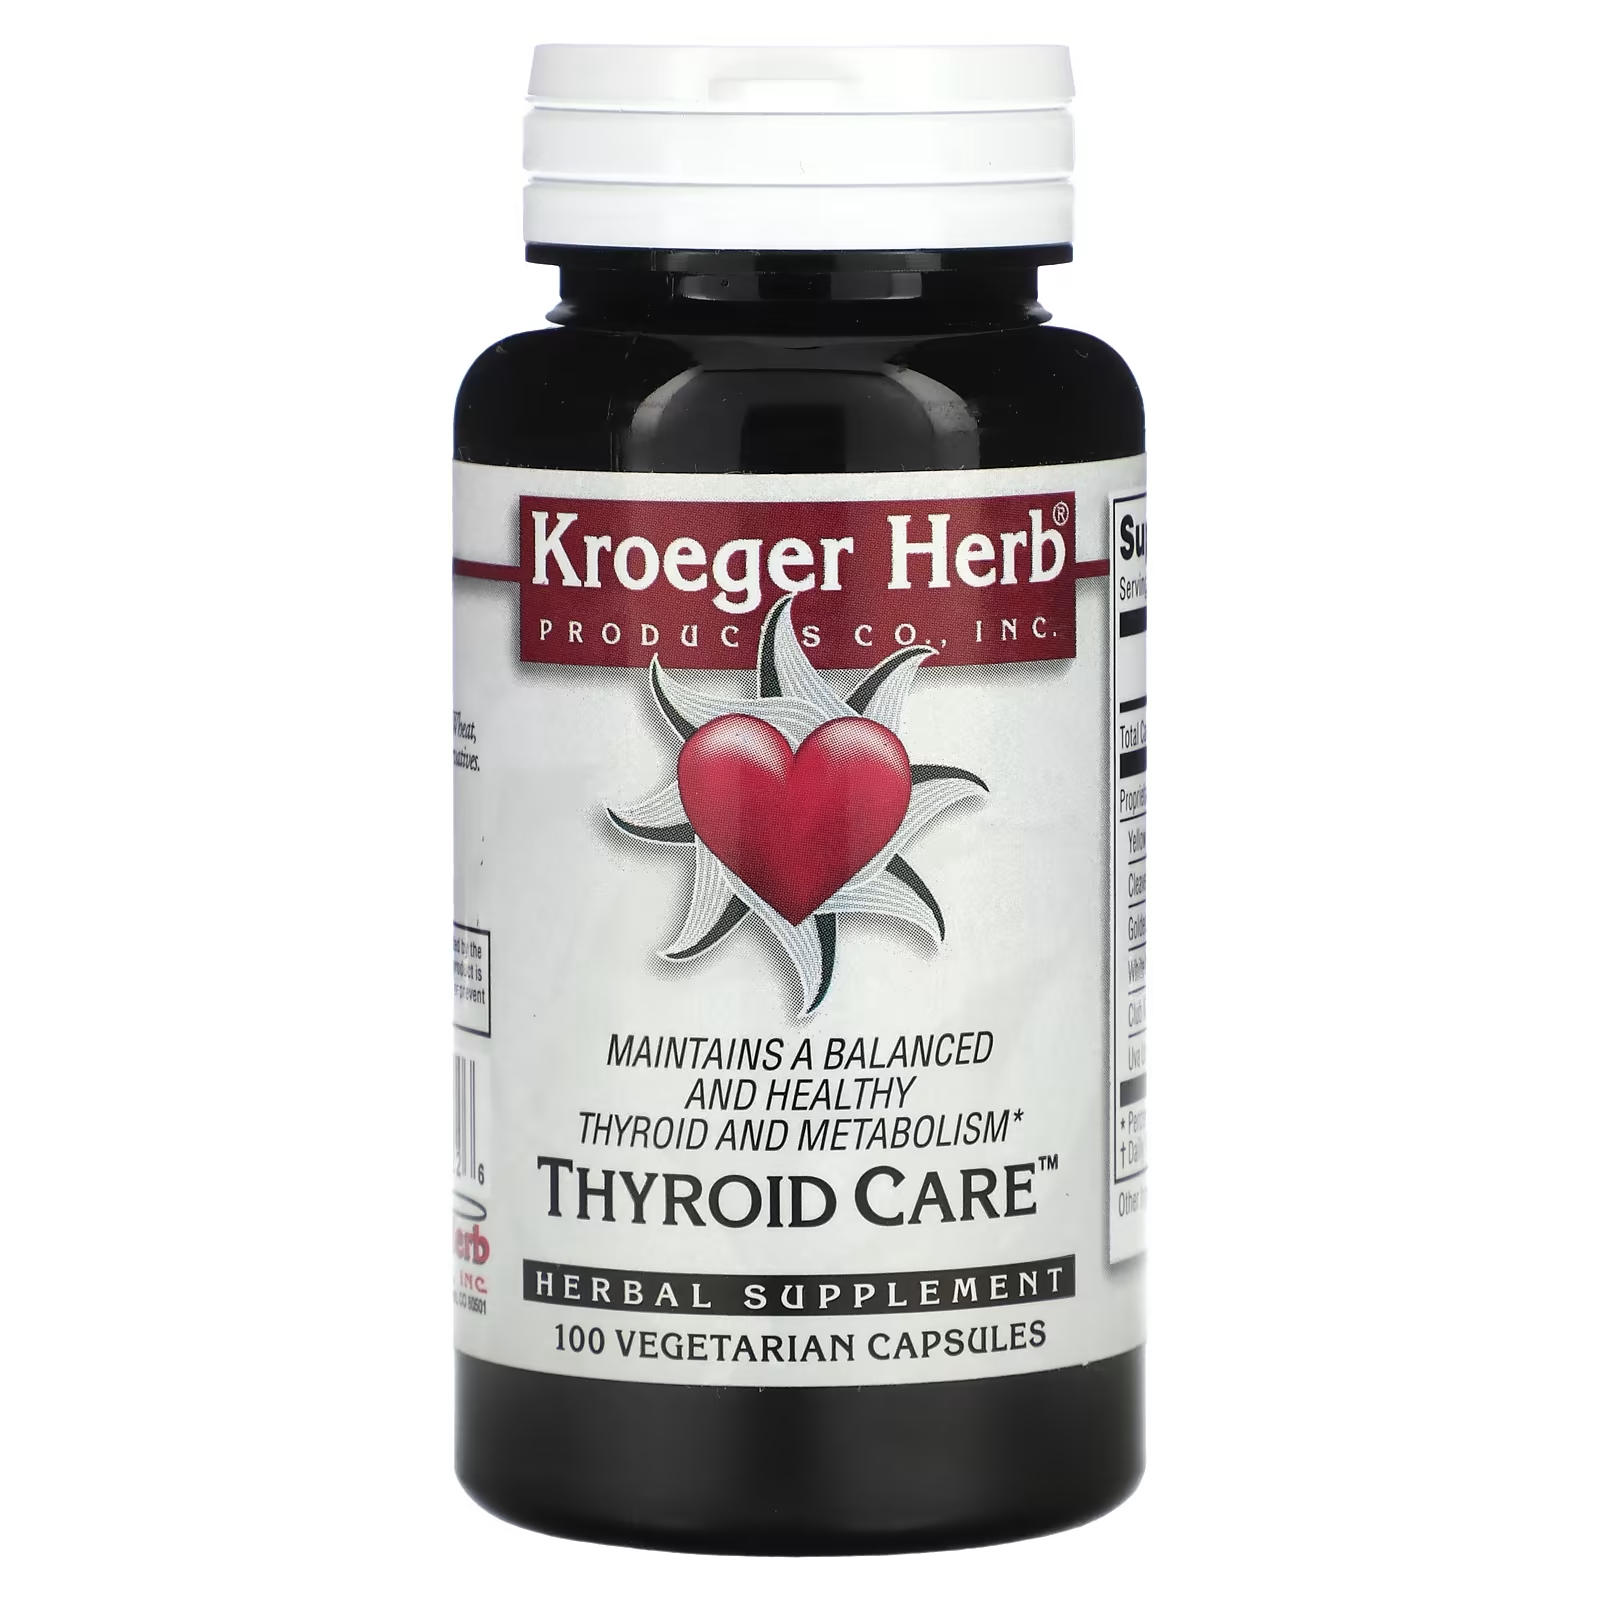 Пищевая добавка Kroeger Herb Co для ухода за щитовидной железой, 100 вегетарианских капсул